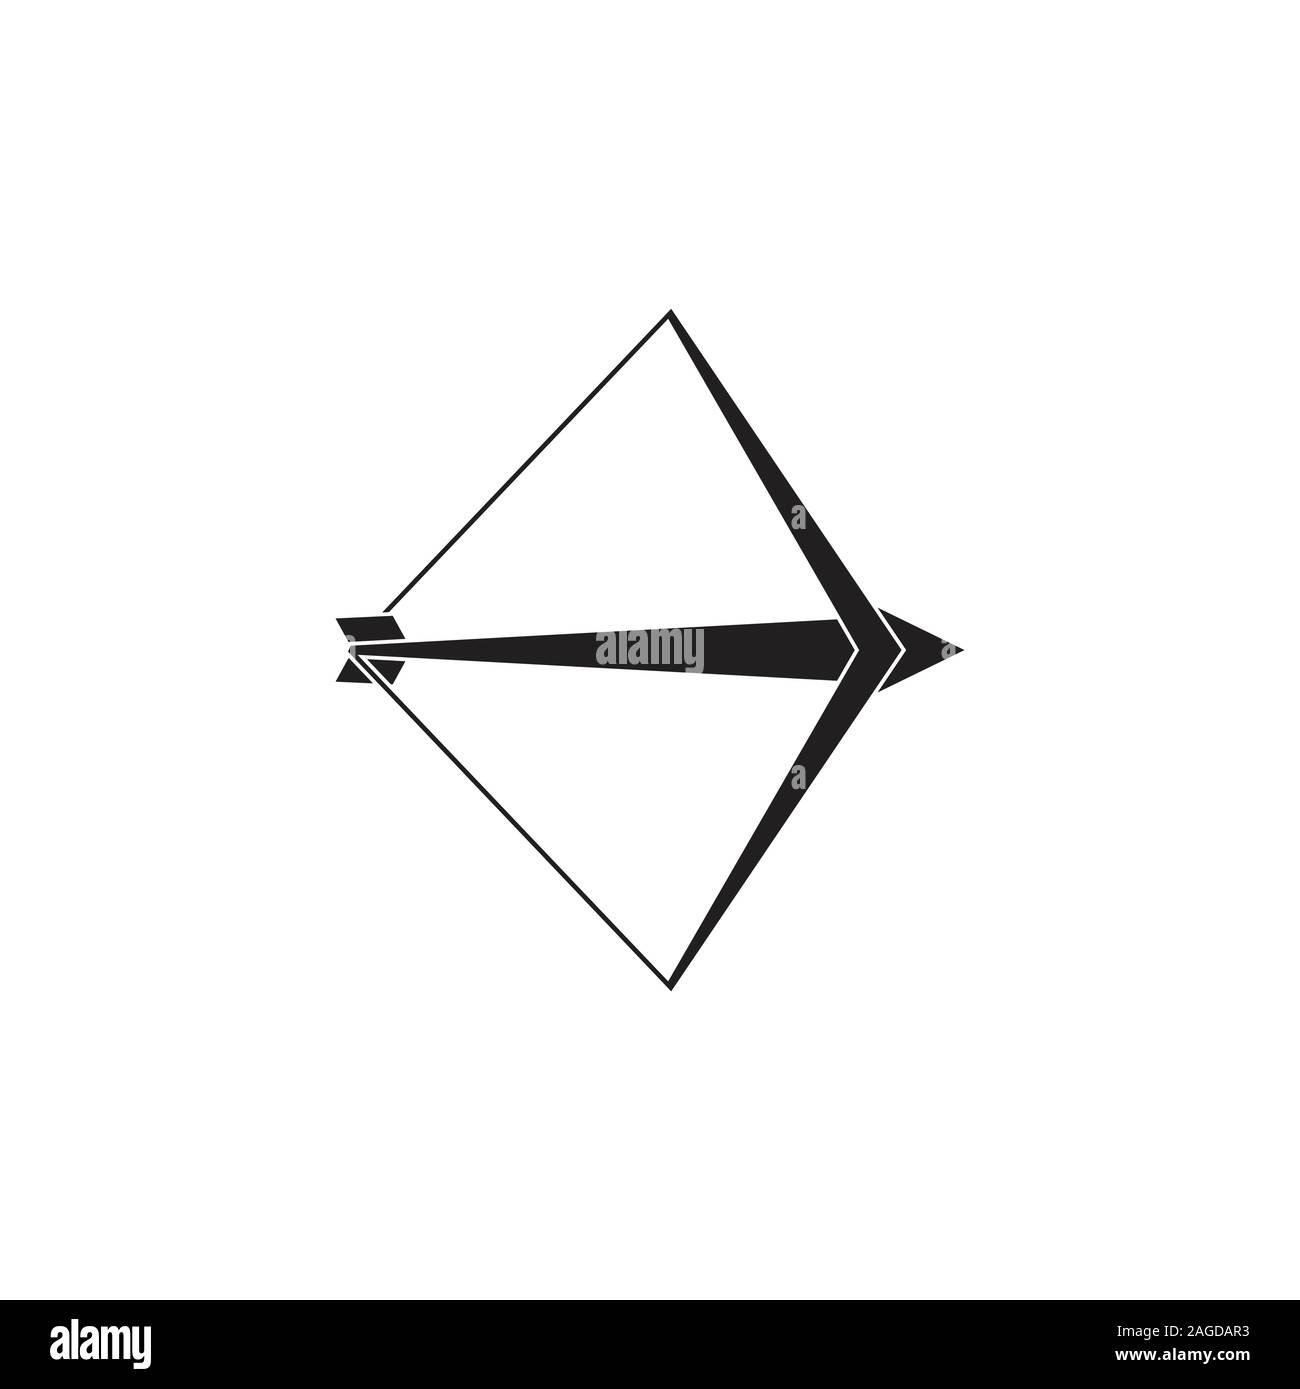 bow arrow simple geometric logo vector Stock Vector